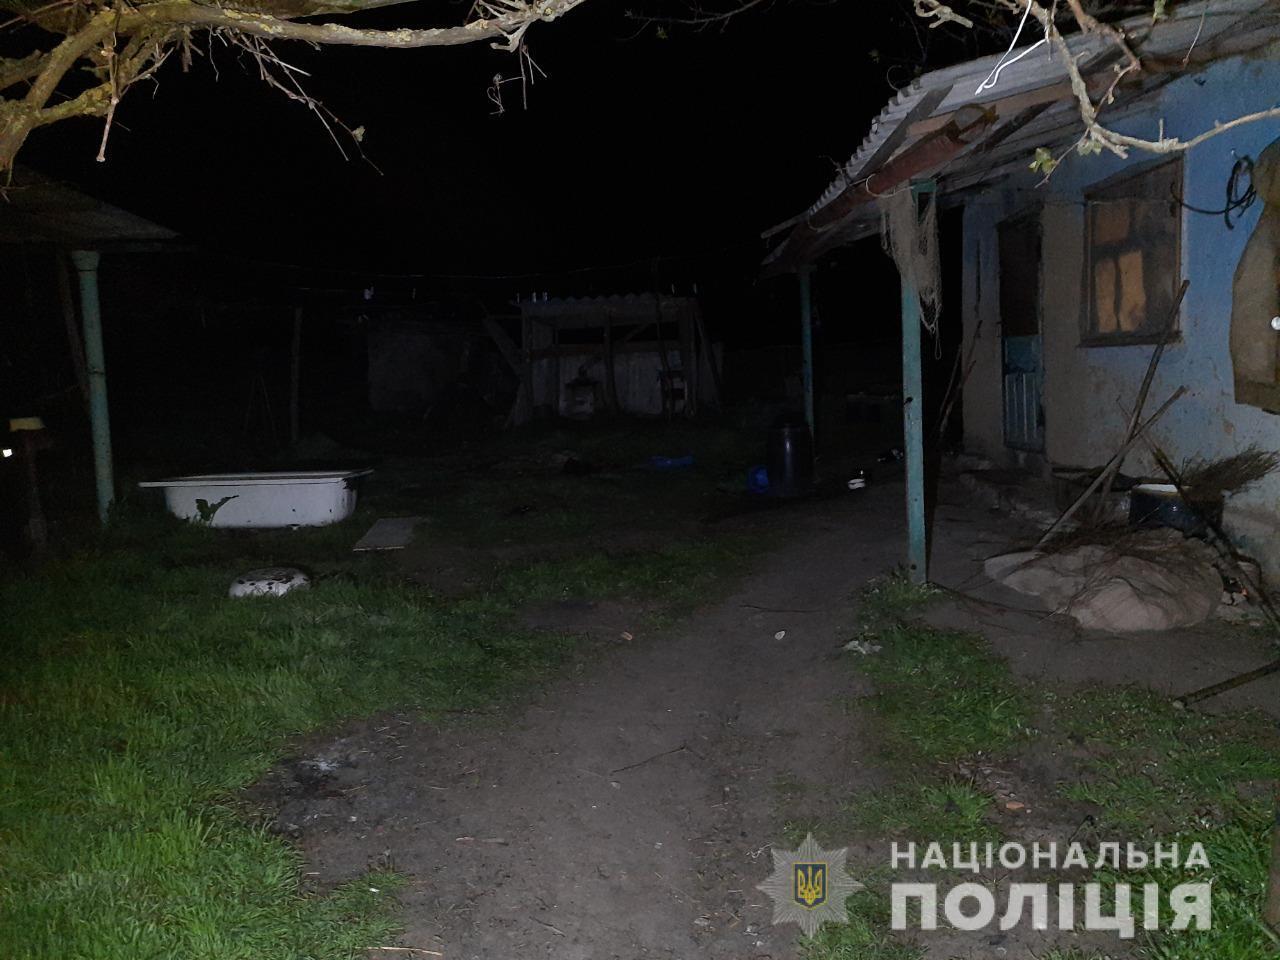 Поліцейські розслідують обставини травмування мешканки Ананьївської об’єднаної територіальної громади